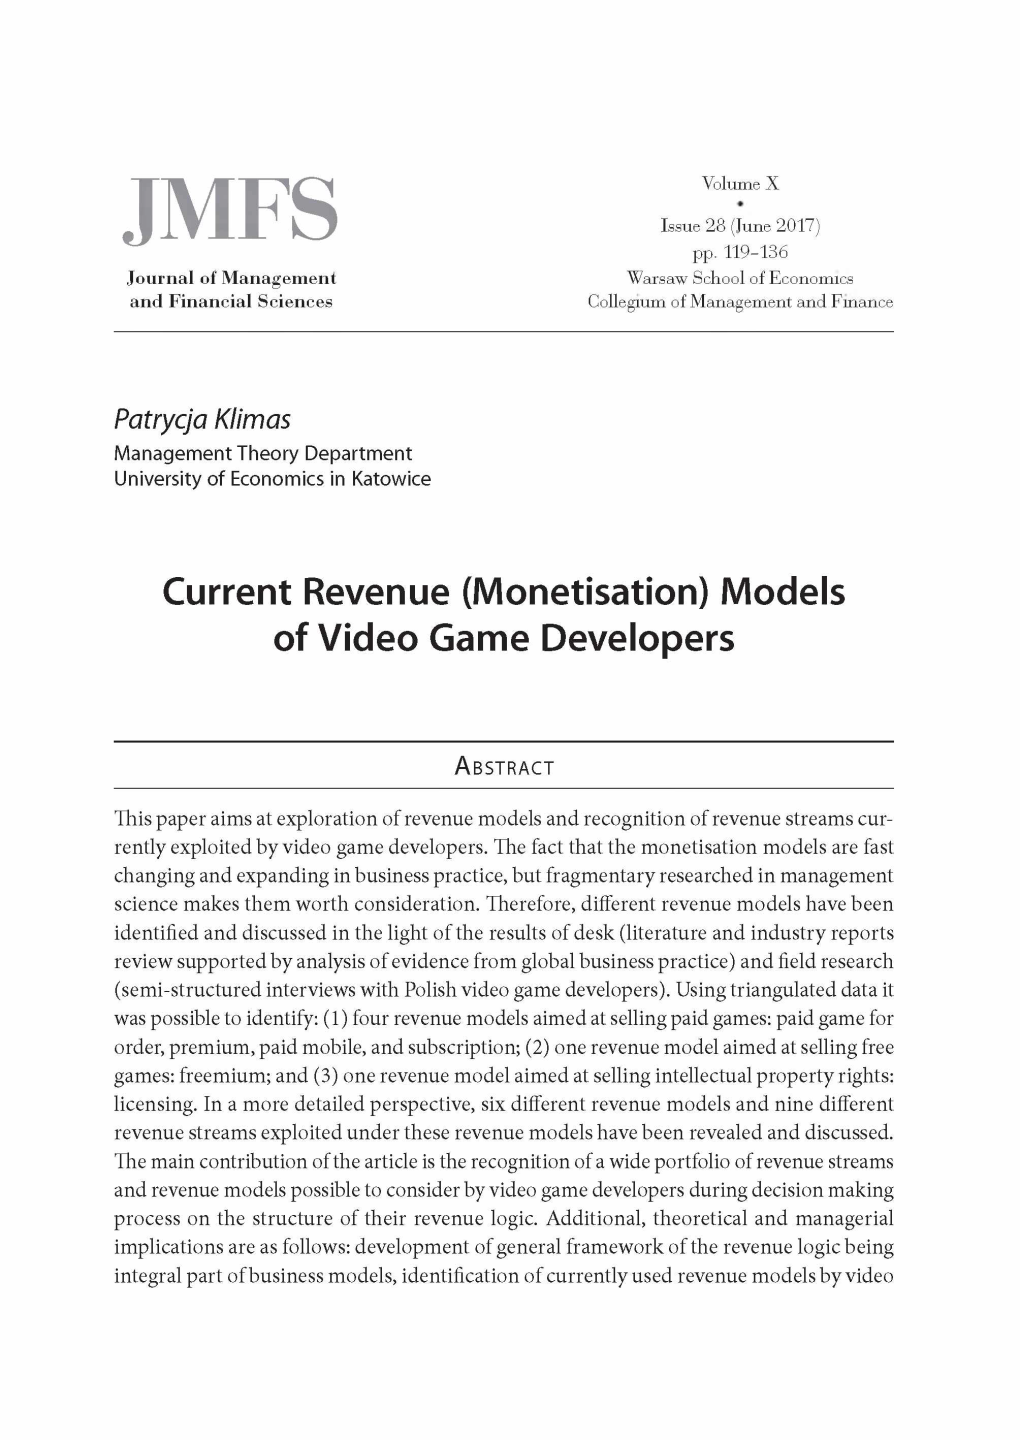 Current Revenue (Monetisation) Models of Video Gamę Developers